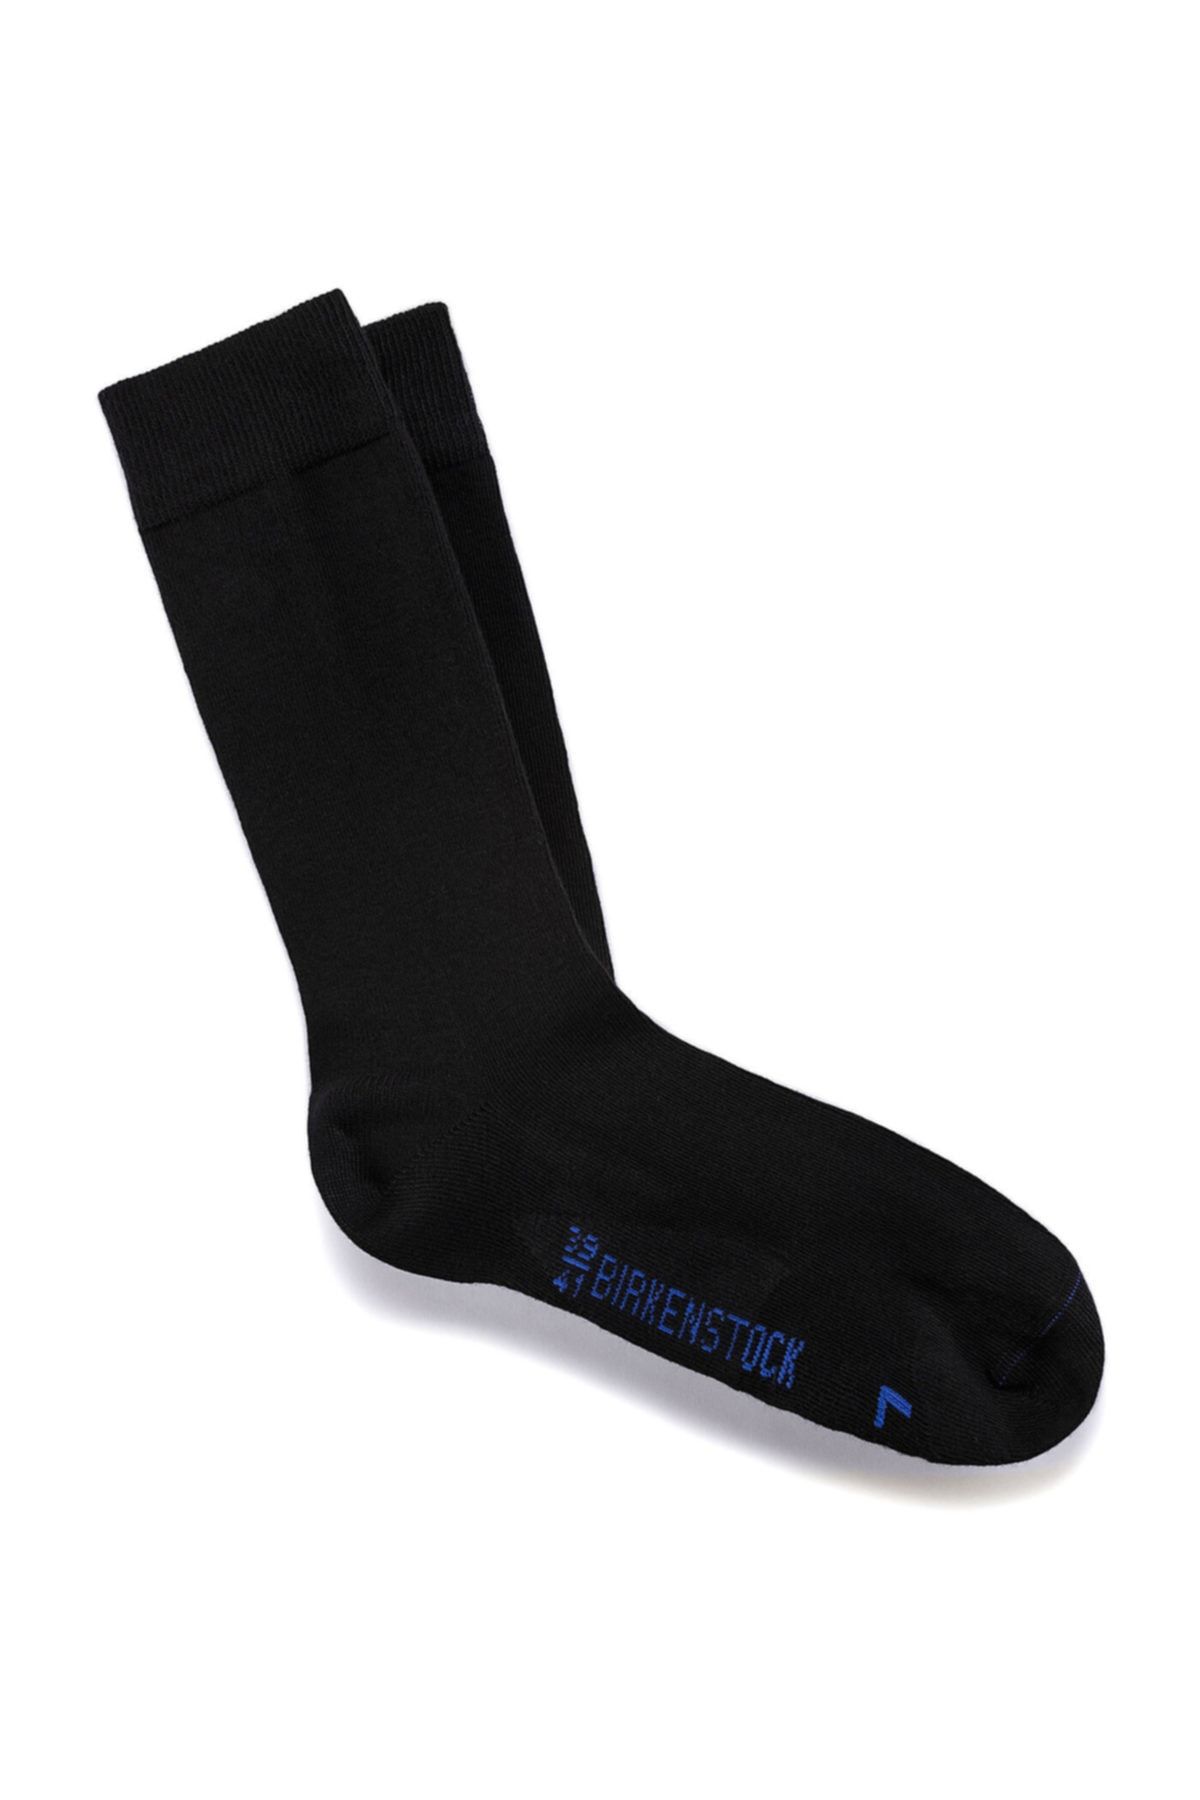 Birkenstock Cotton Sole Siyah Erkek Çorap